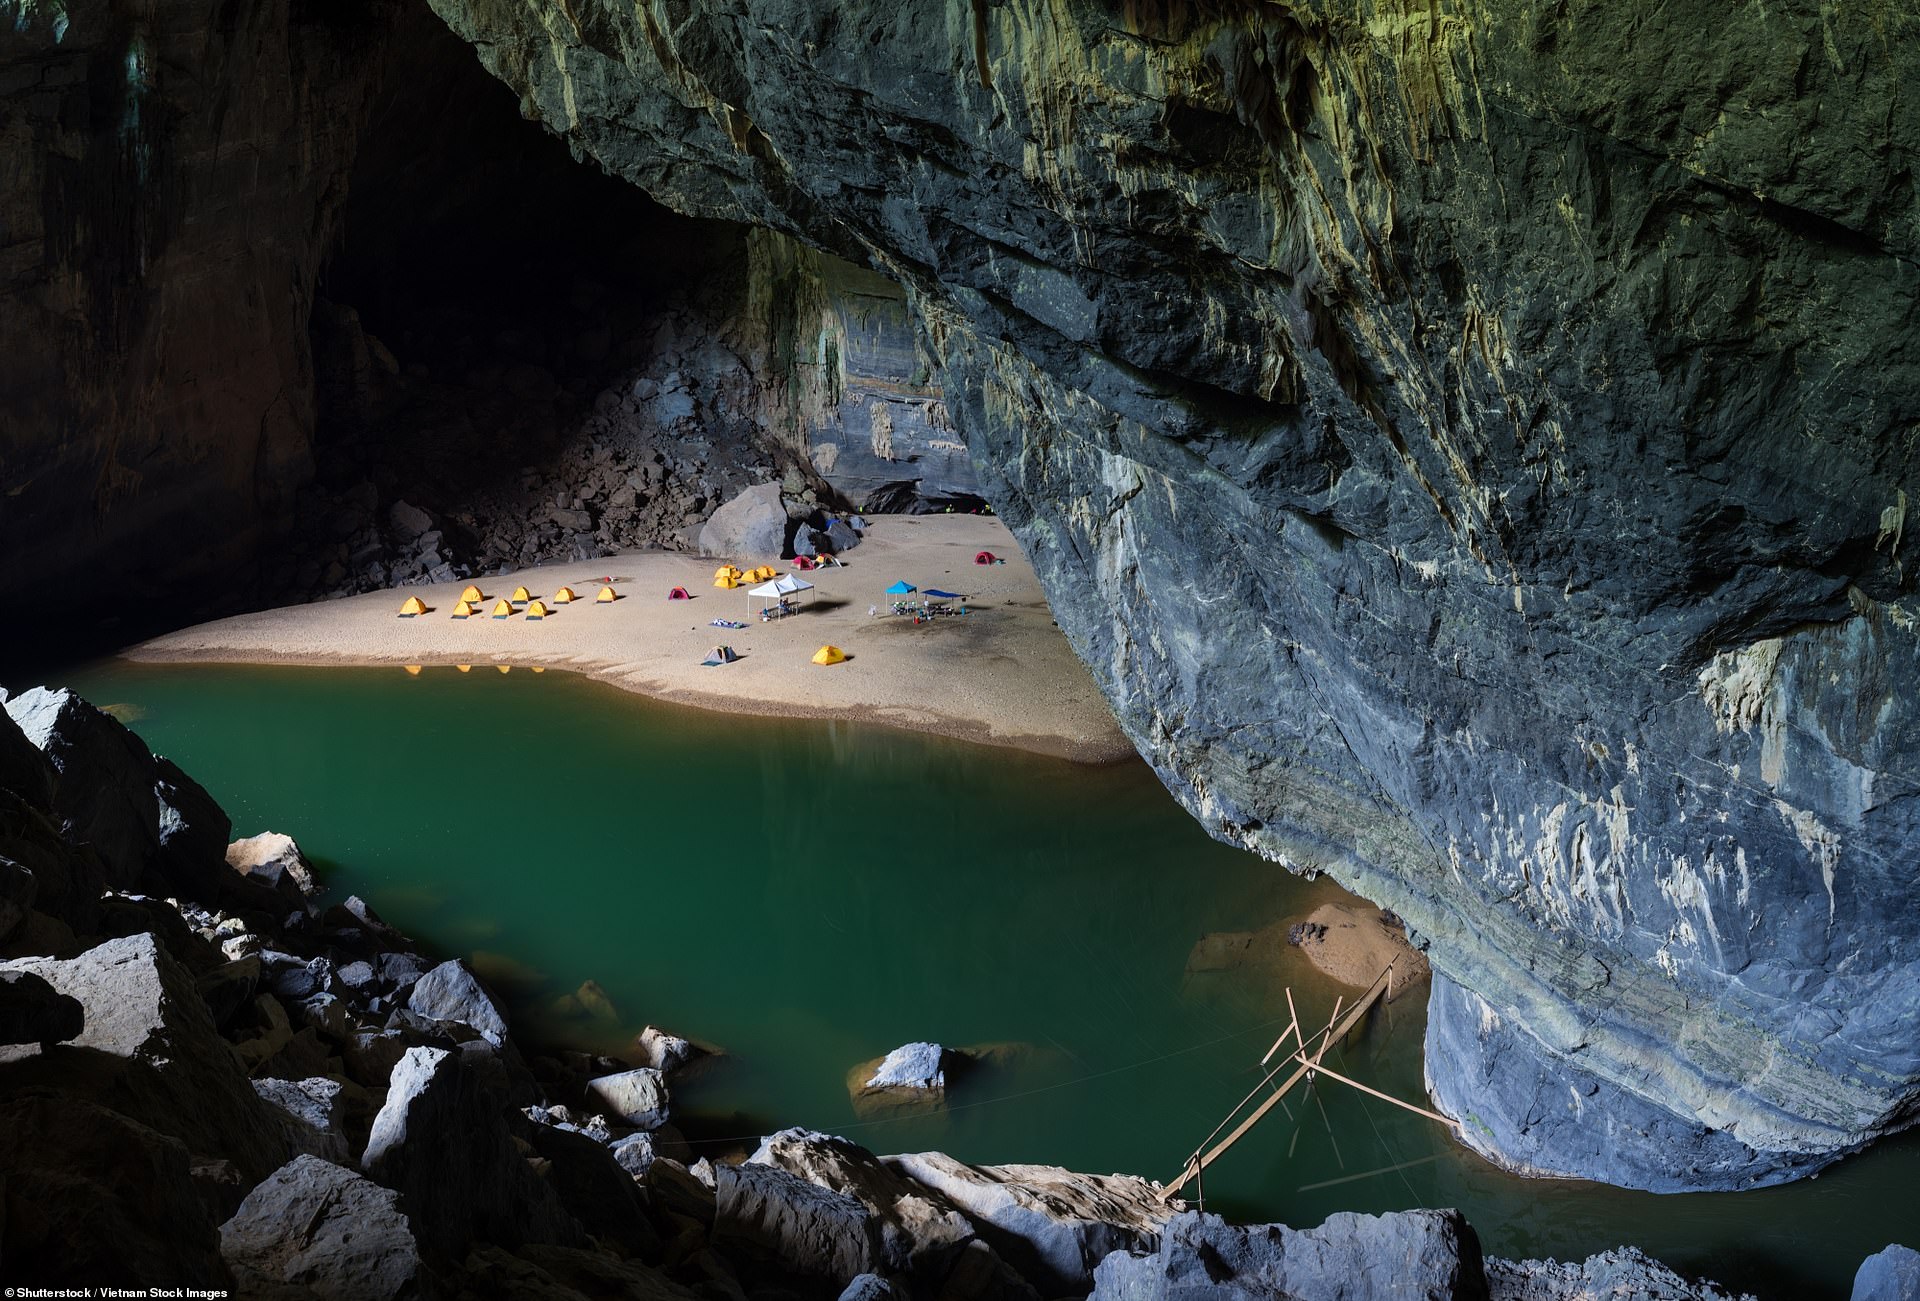 Lối vào hang Sơn Đoòng – hang động lớn nhất thế giới ở trung tâm của Vườn quốc gia Phong Nha Kẻ Bàng ở miền trung Việt Nam. Nó được mở cửa cho công chúng kể từ năm 2013.